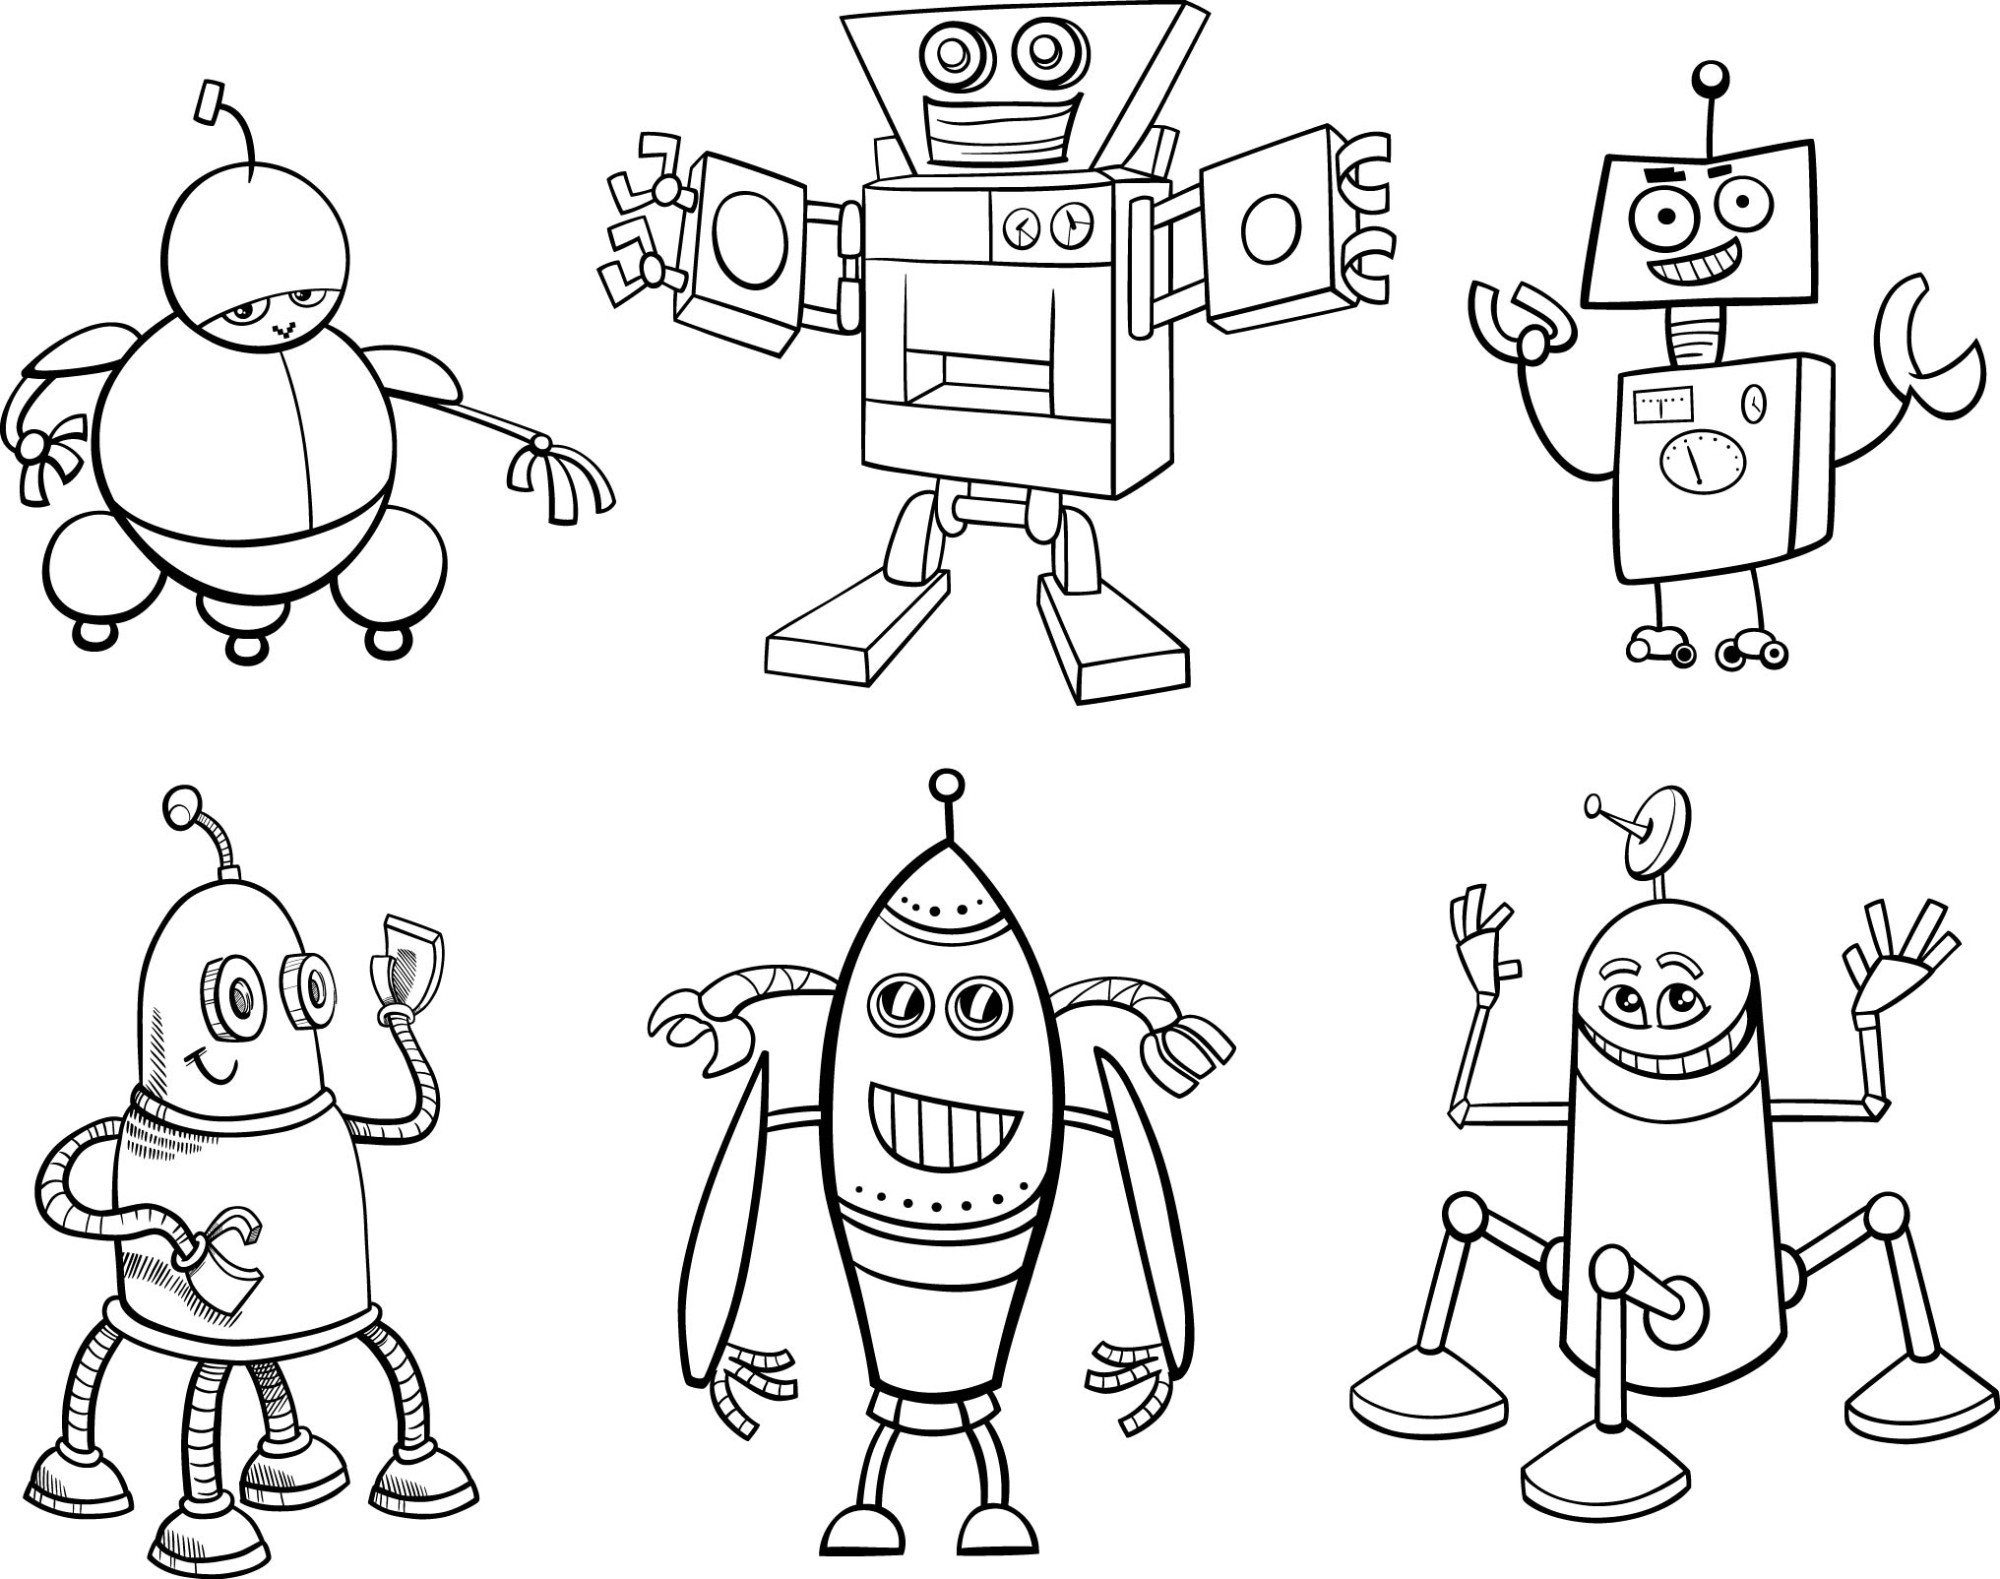 Раскраска для детей: персонажи галактических роботов